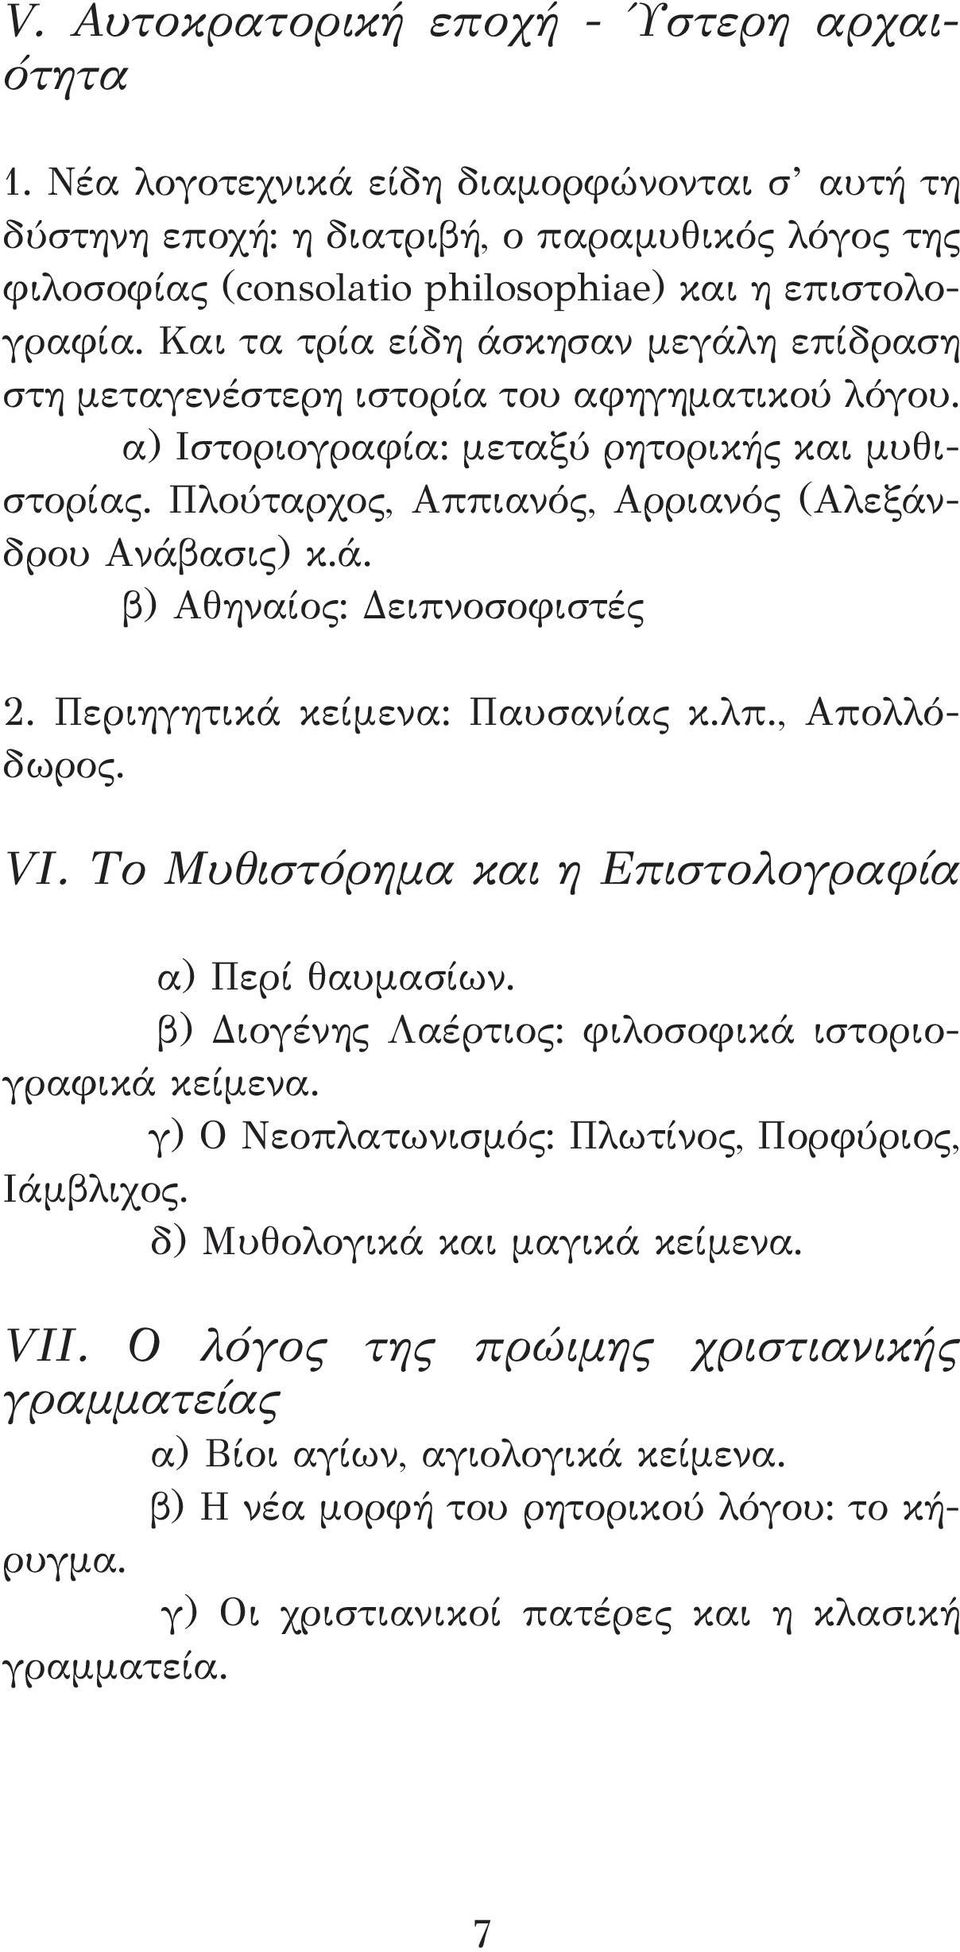 Και τα τρία είδη άσκησαν μεγάλη επίδραση στη μεταγενέστερη ιστορία του αφηγηματικού λόγου. α) Ιστοριογραφία: μεταξύ ρητορικής και μυθιστορίας. Πλούταρχος, Αππιανός, Αρριανός (Αλεξάνδρου Ανάβασις) κ.ά. β) Αθηναίος: Δειπνοσοφιστές 2.